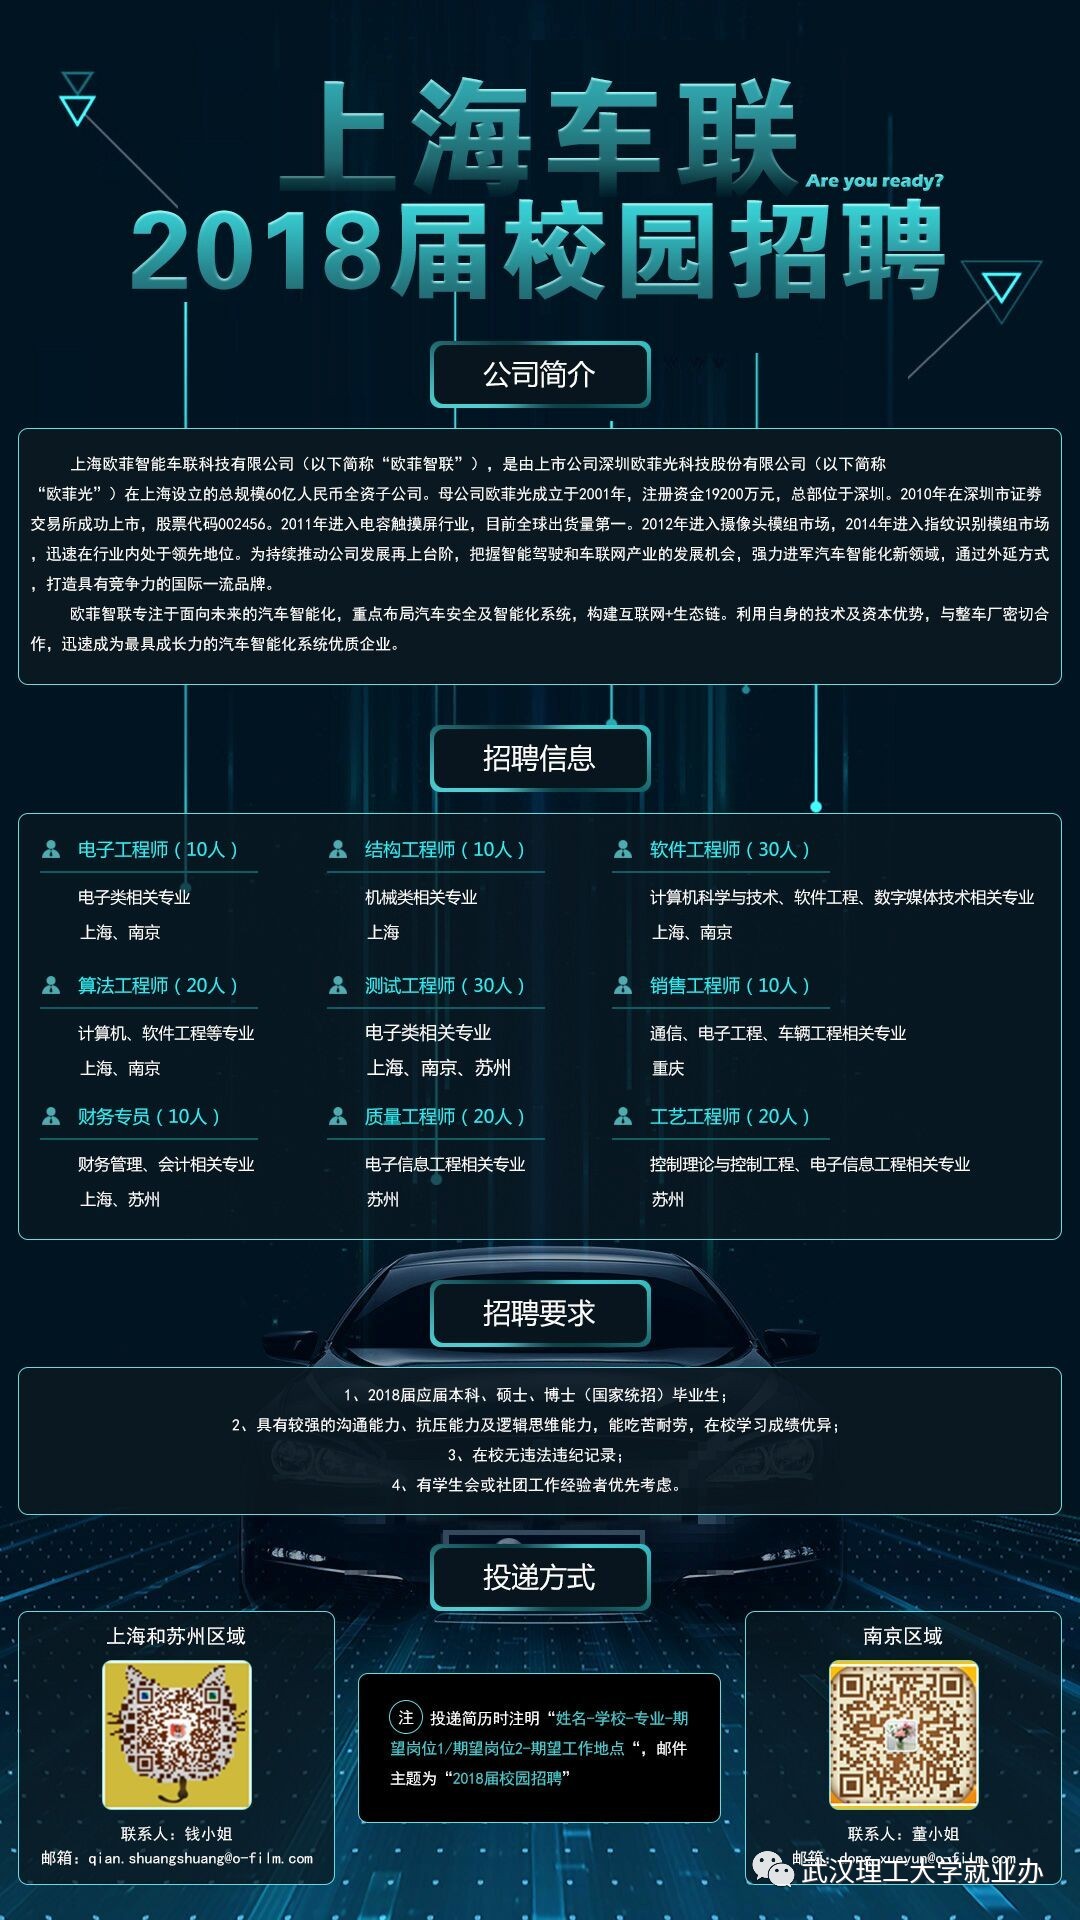 【招聘信息】上海欧菲智能车联科技有限公司